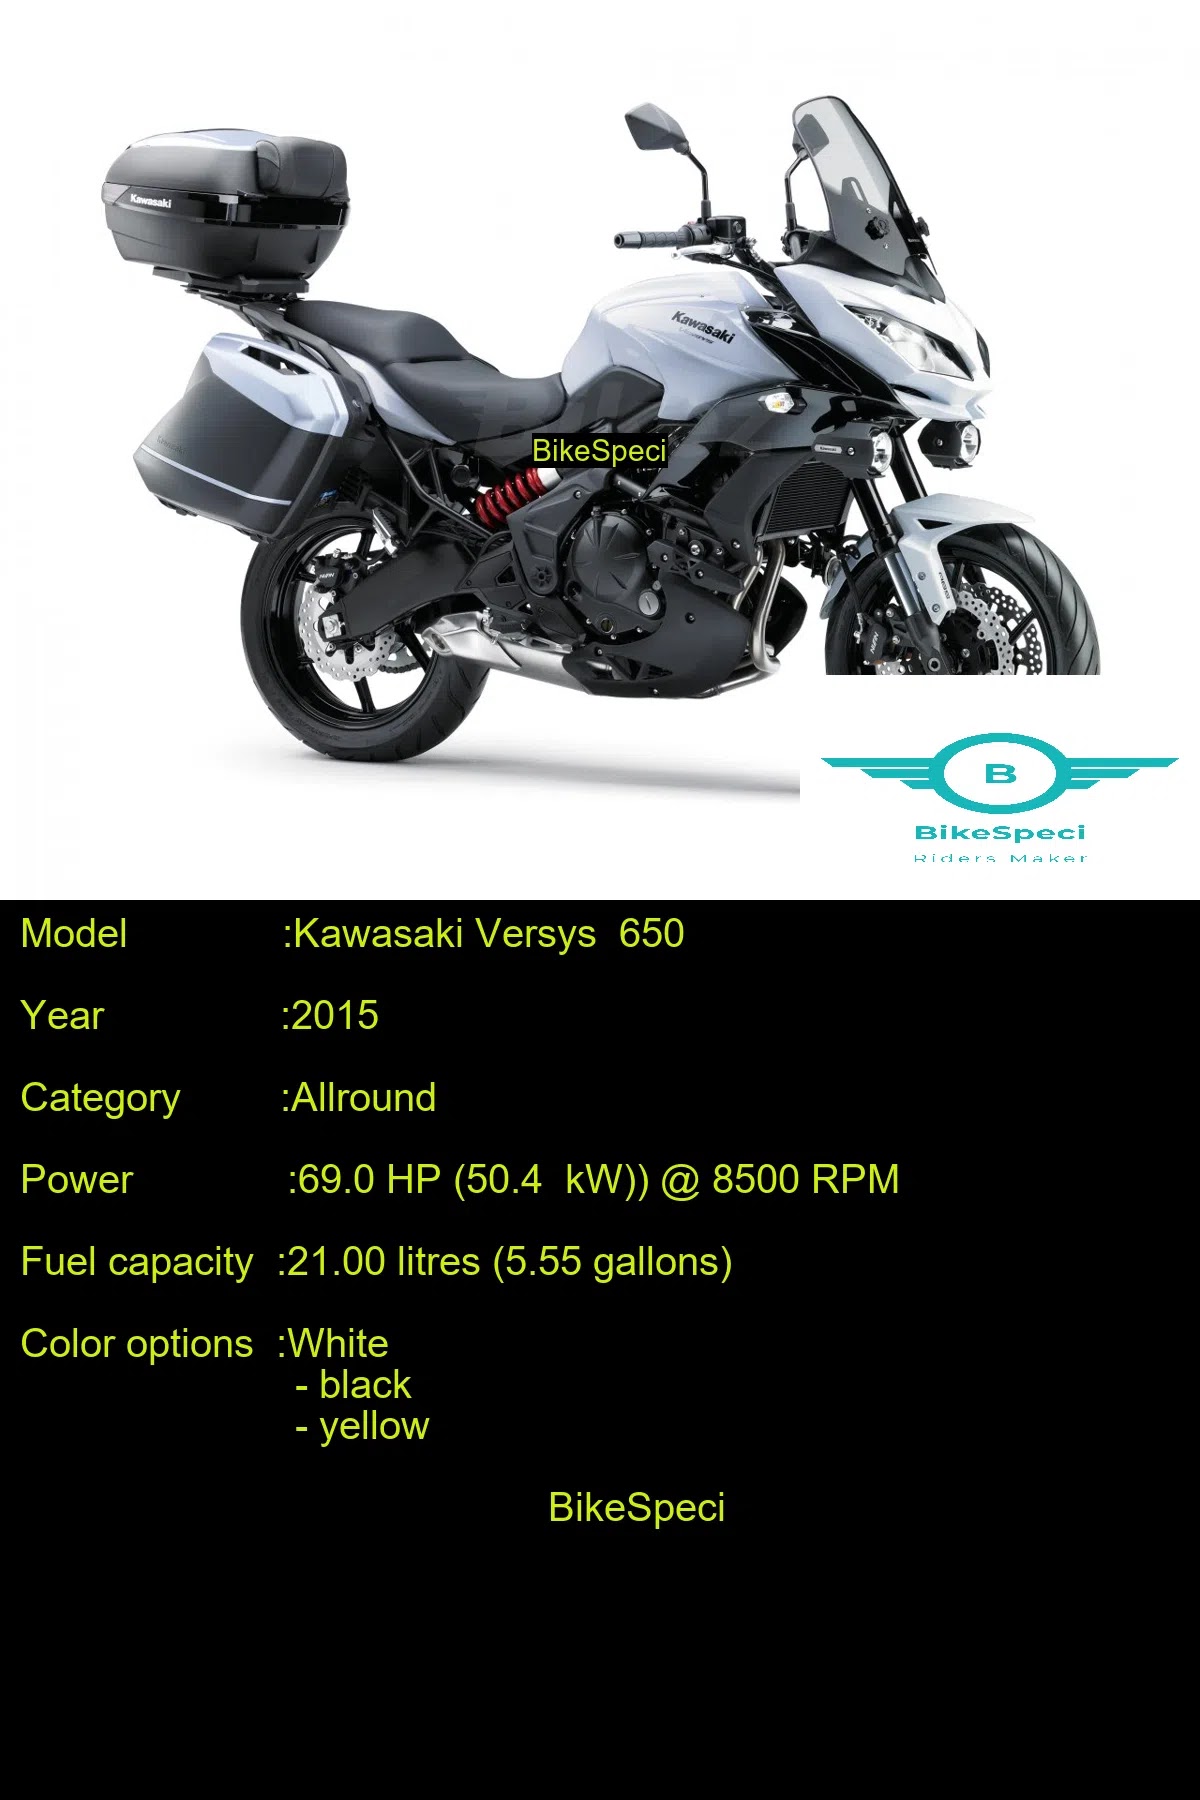 Kawasaki 650 | Price, Photos, Millage, Speed, etc | BikeSpeci | Price, Photos, Millage, Speed, Colours etc.